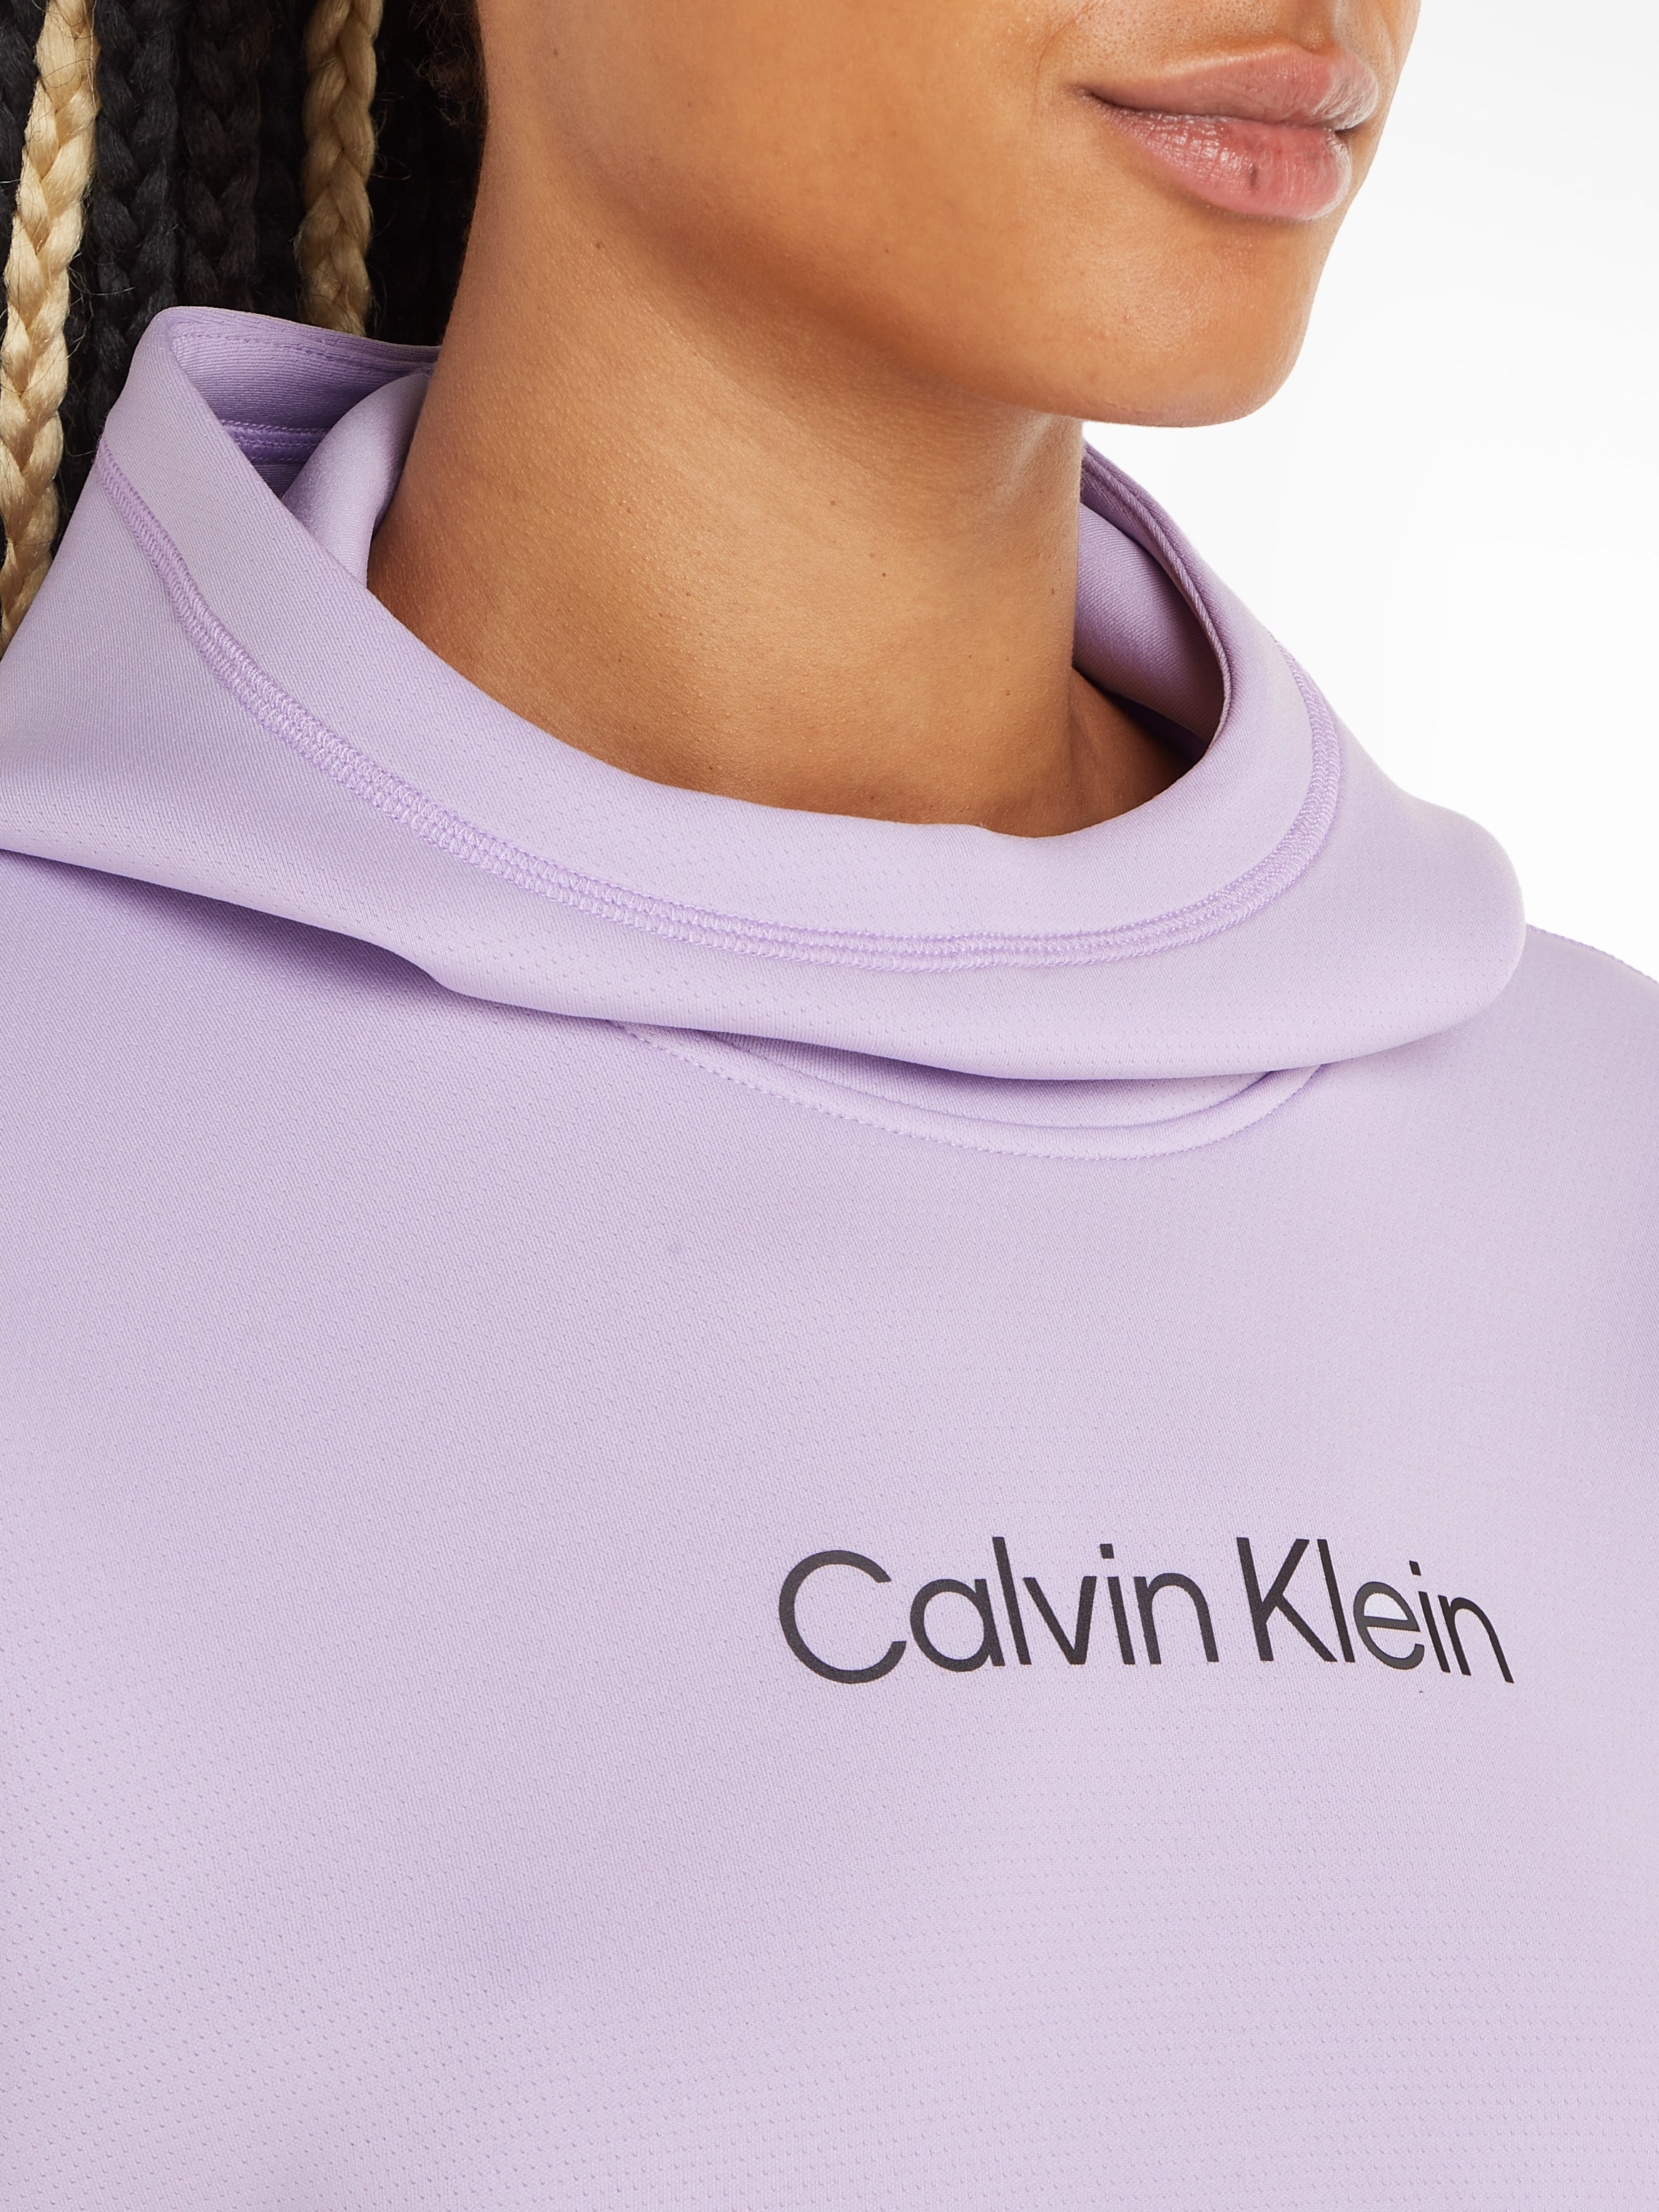 Calvin Klein Sport Trainingskapuzenpullover »PW - Hoodie« kaufen | BAUR